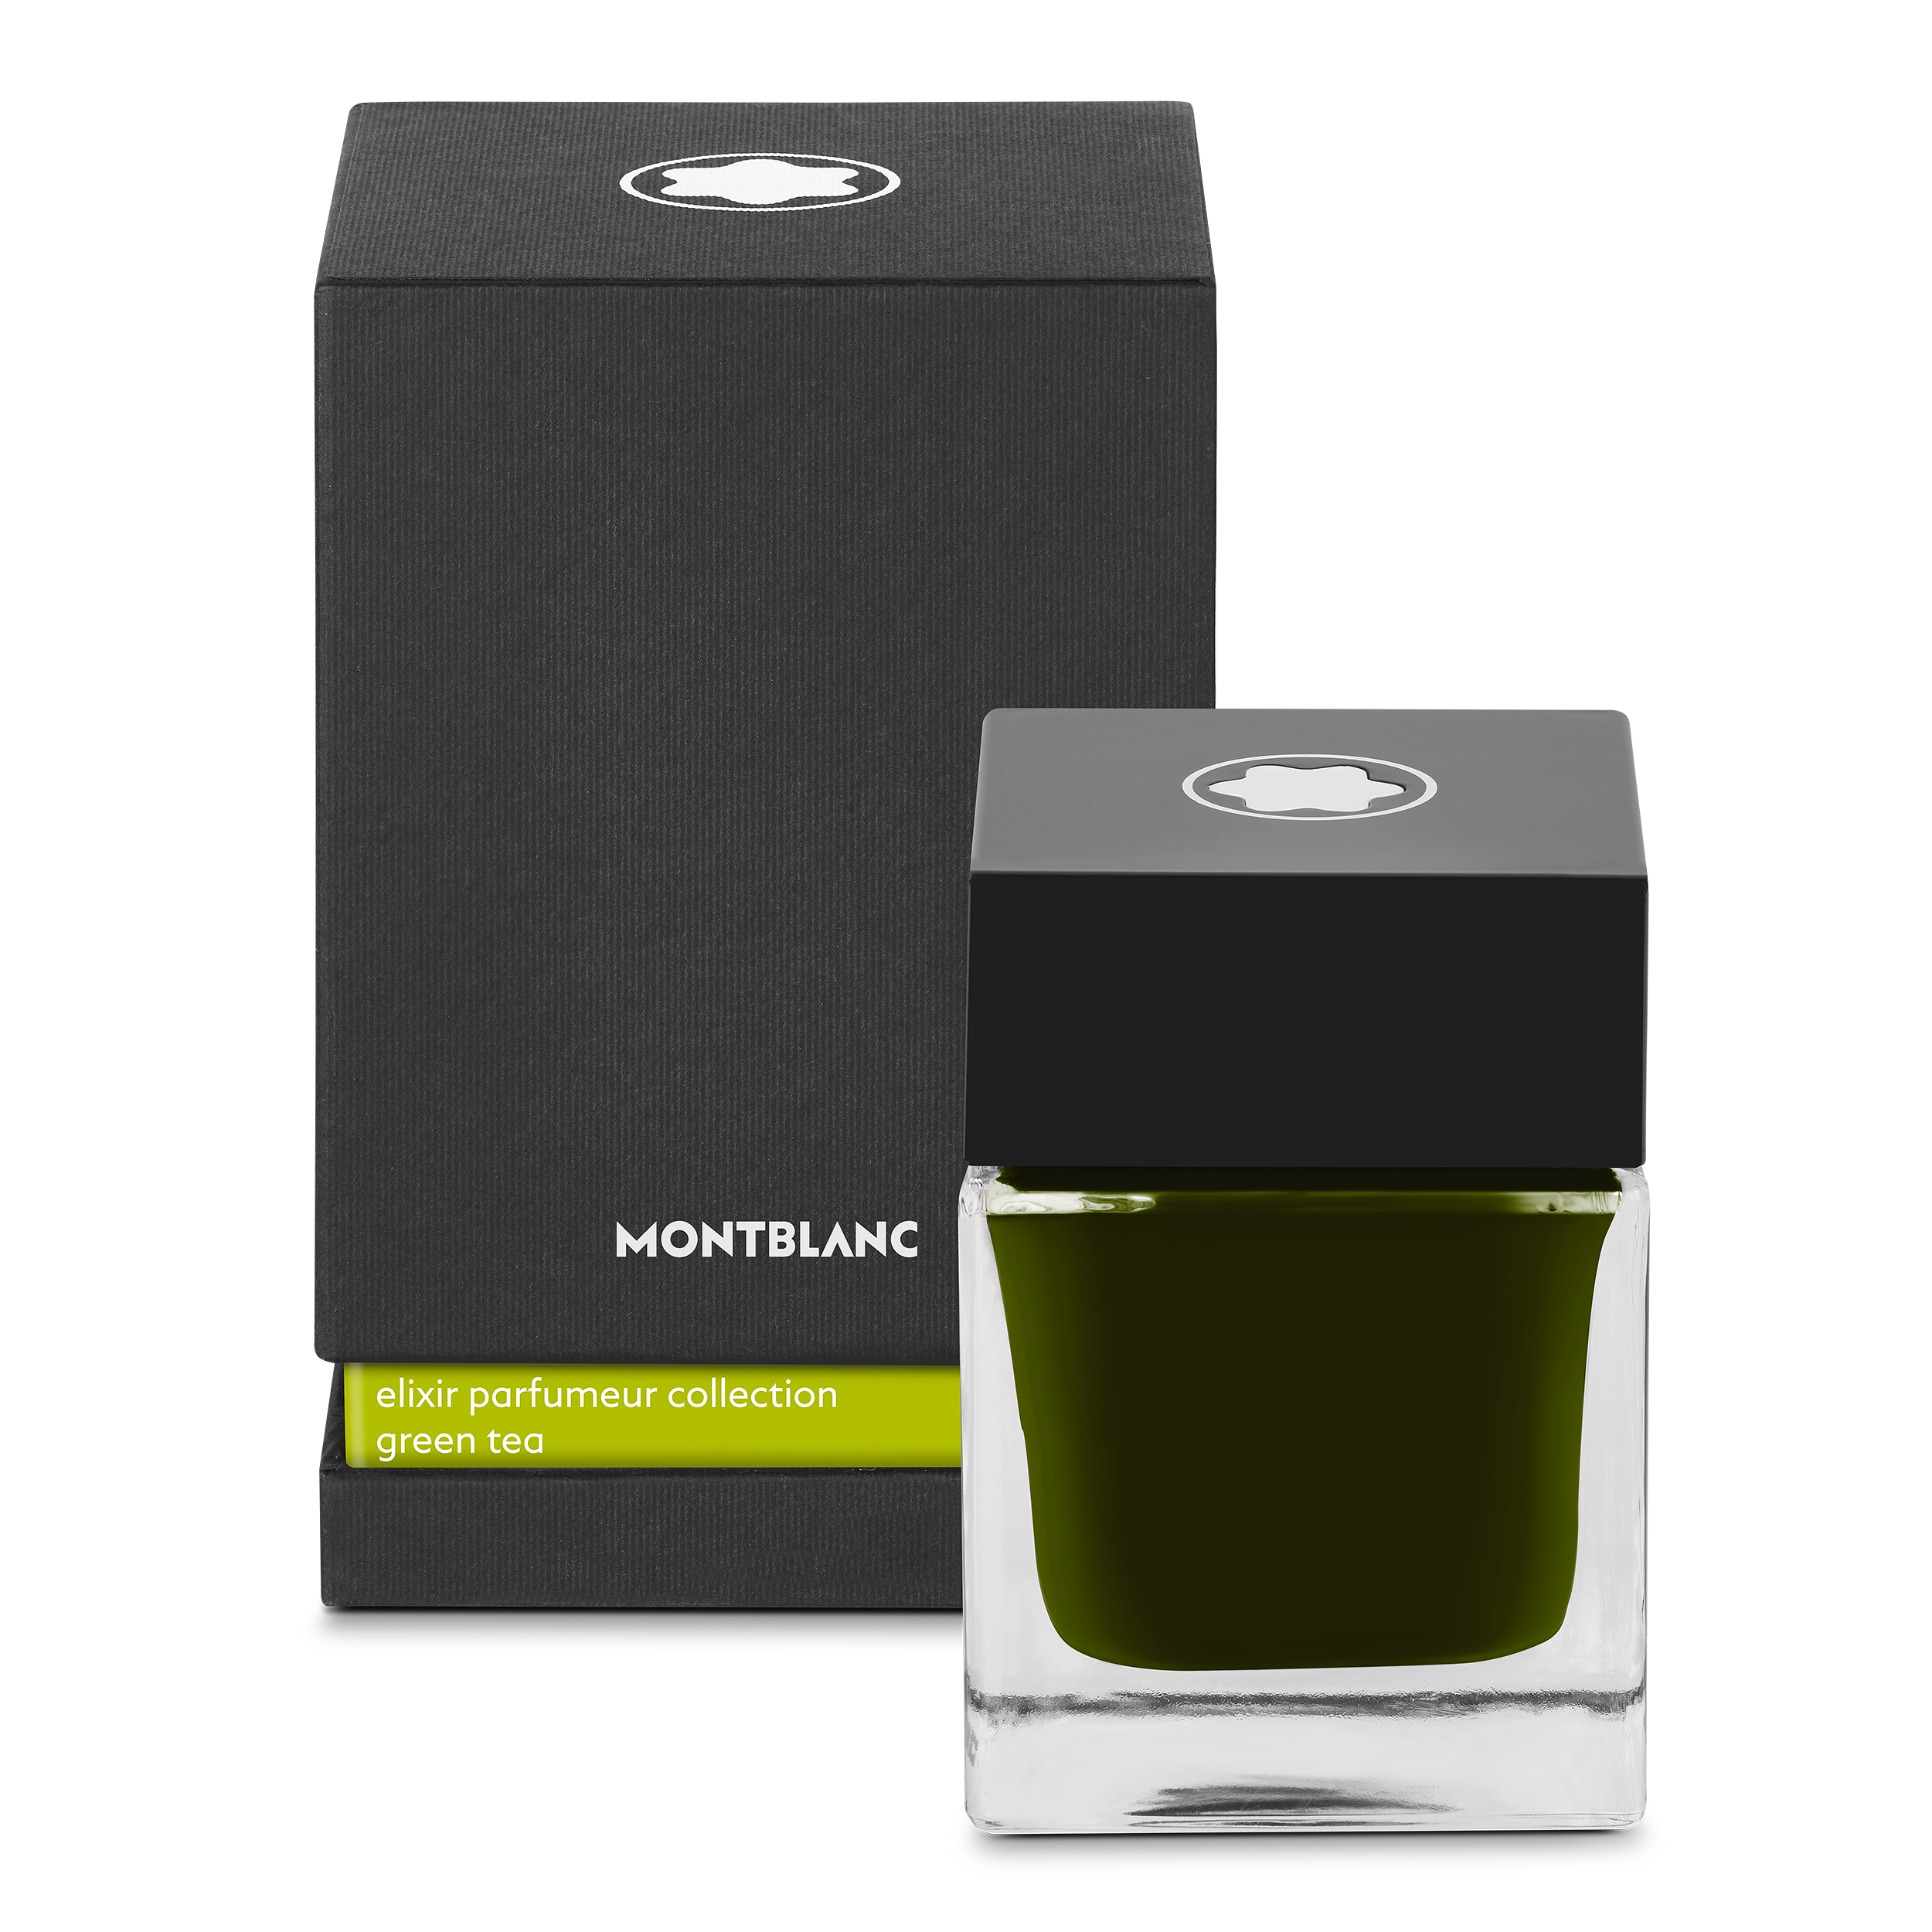 Ink bottle 50ml, green, Elixir parfumeur, green tea scent, image 1